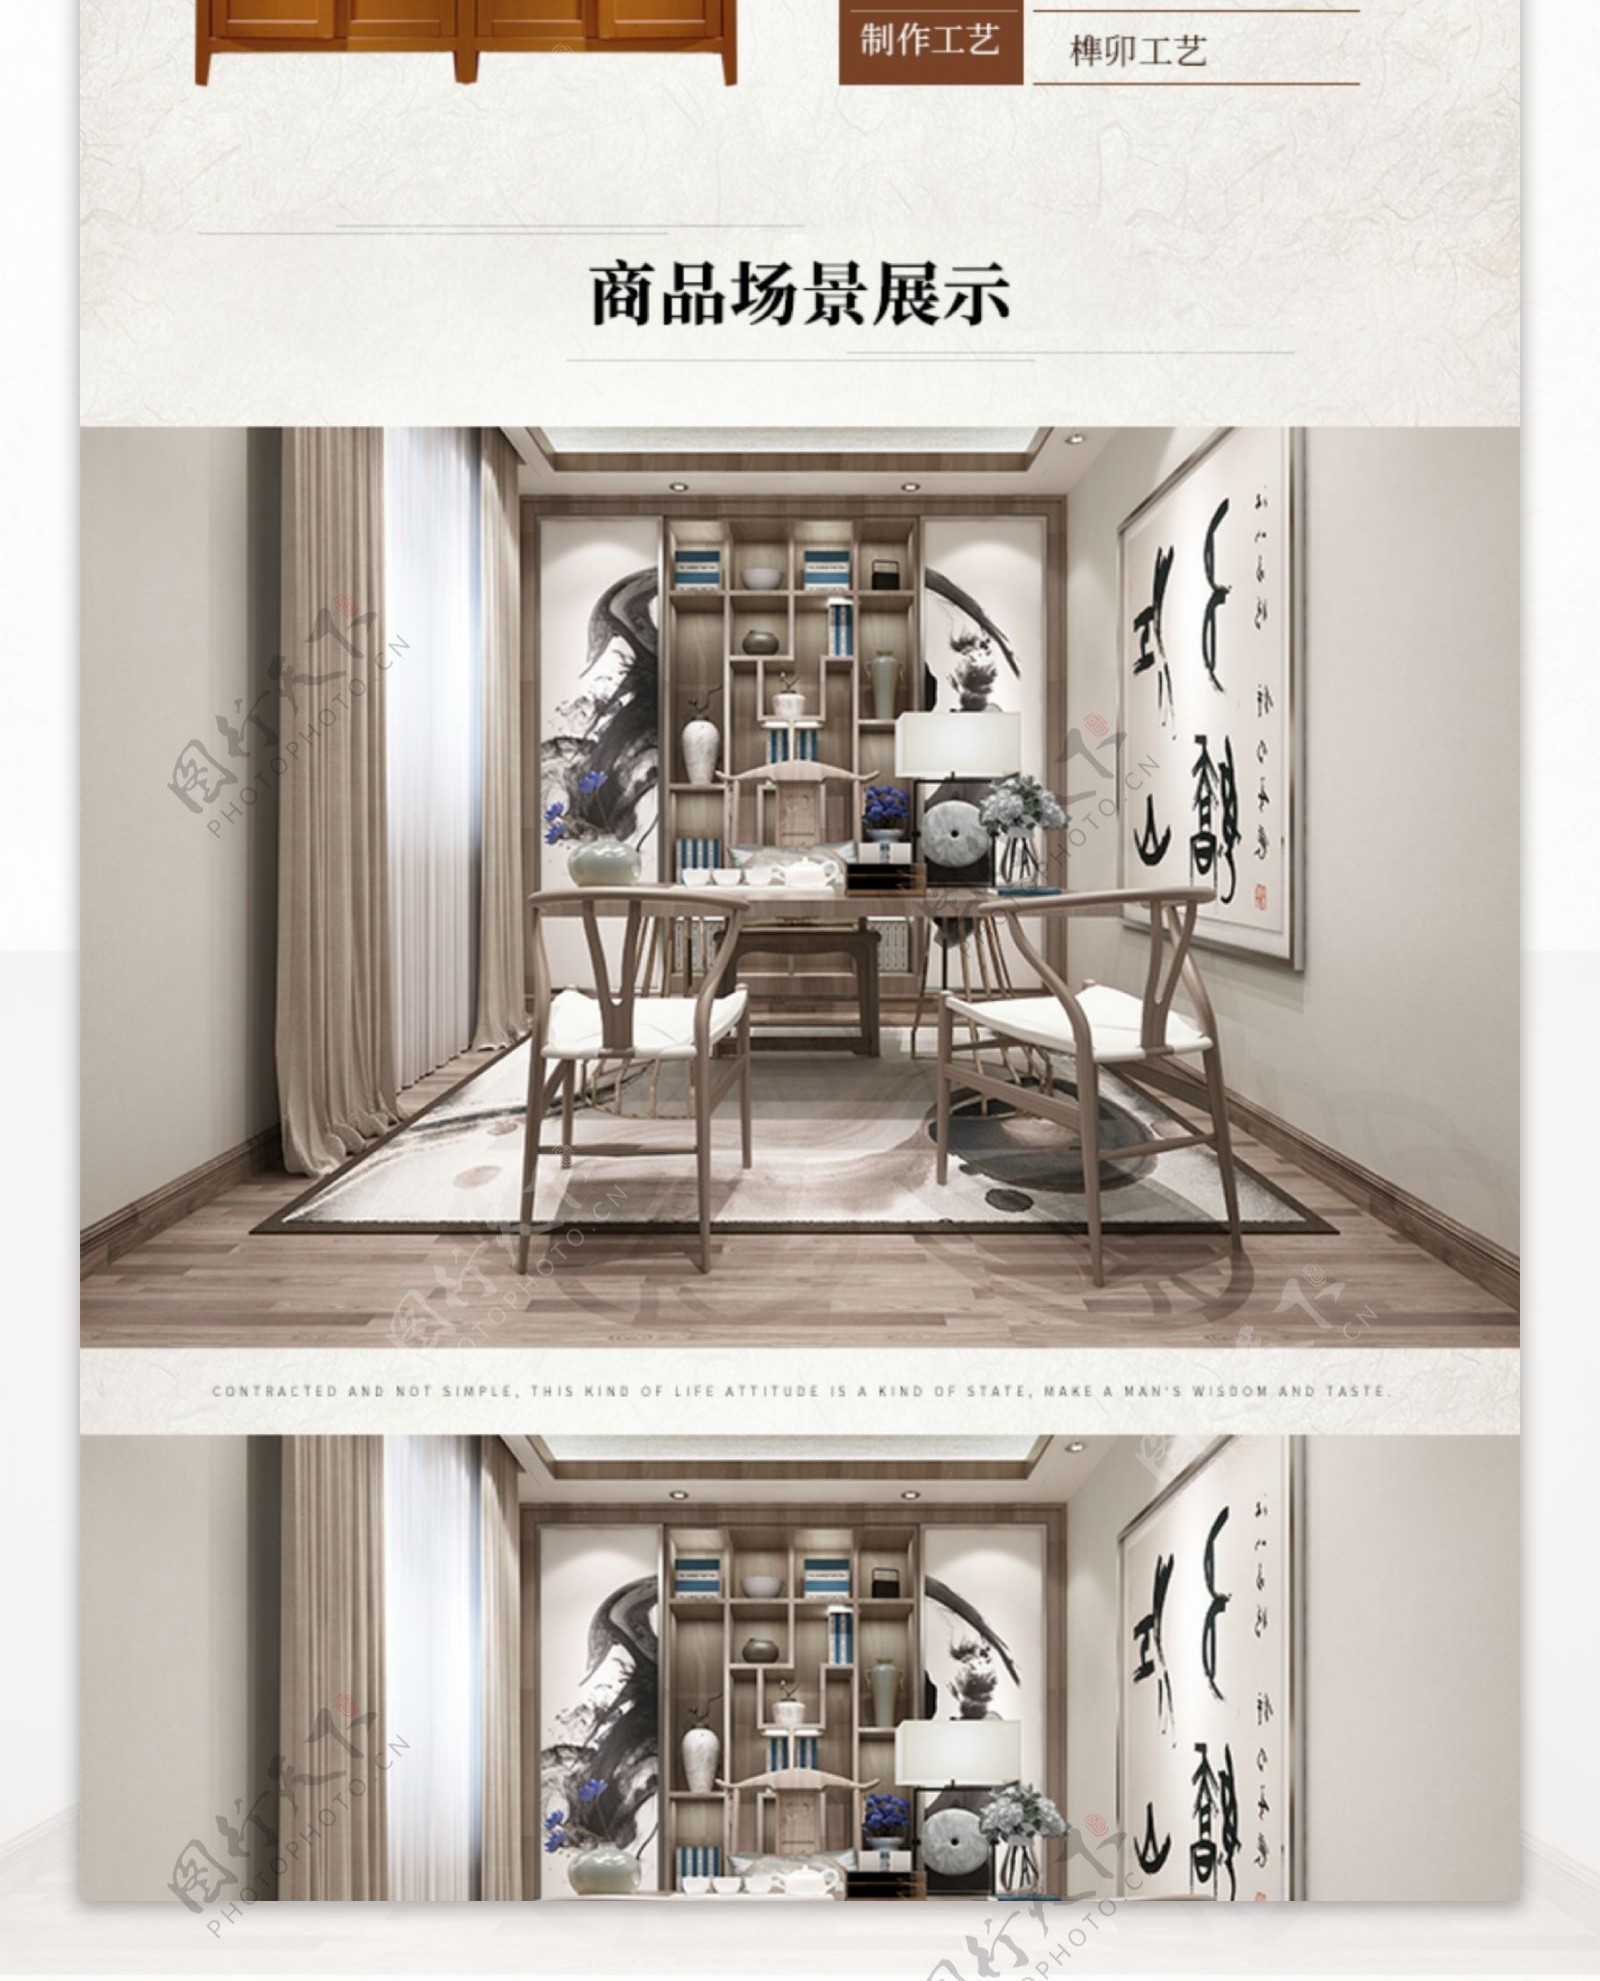 书柜家具中式中国风淘宝详情页